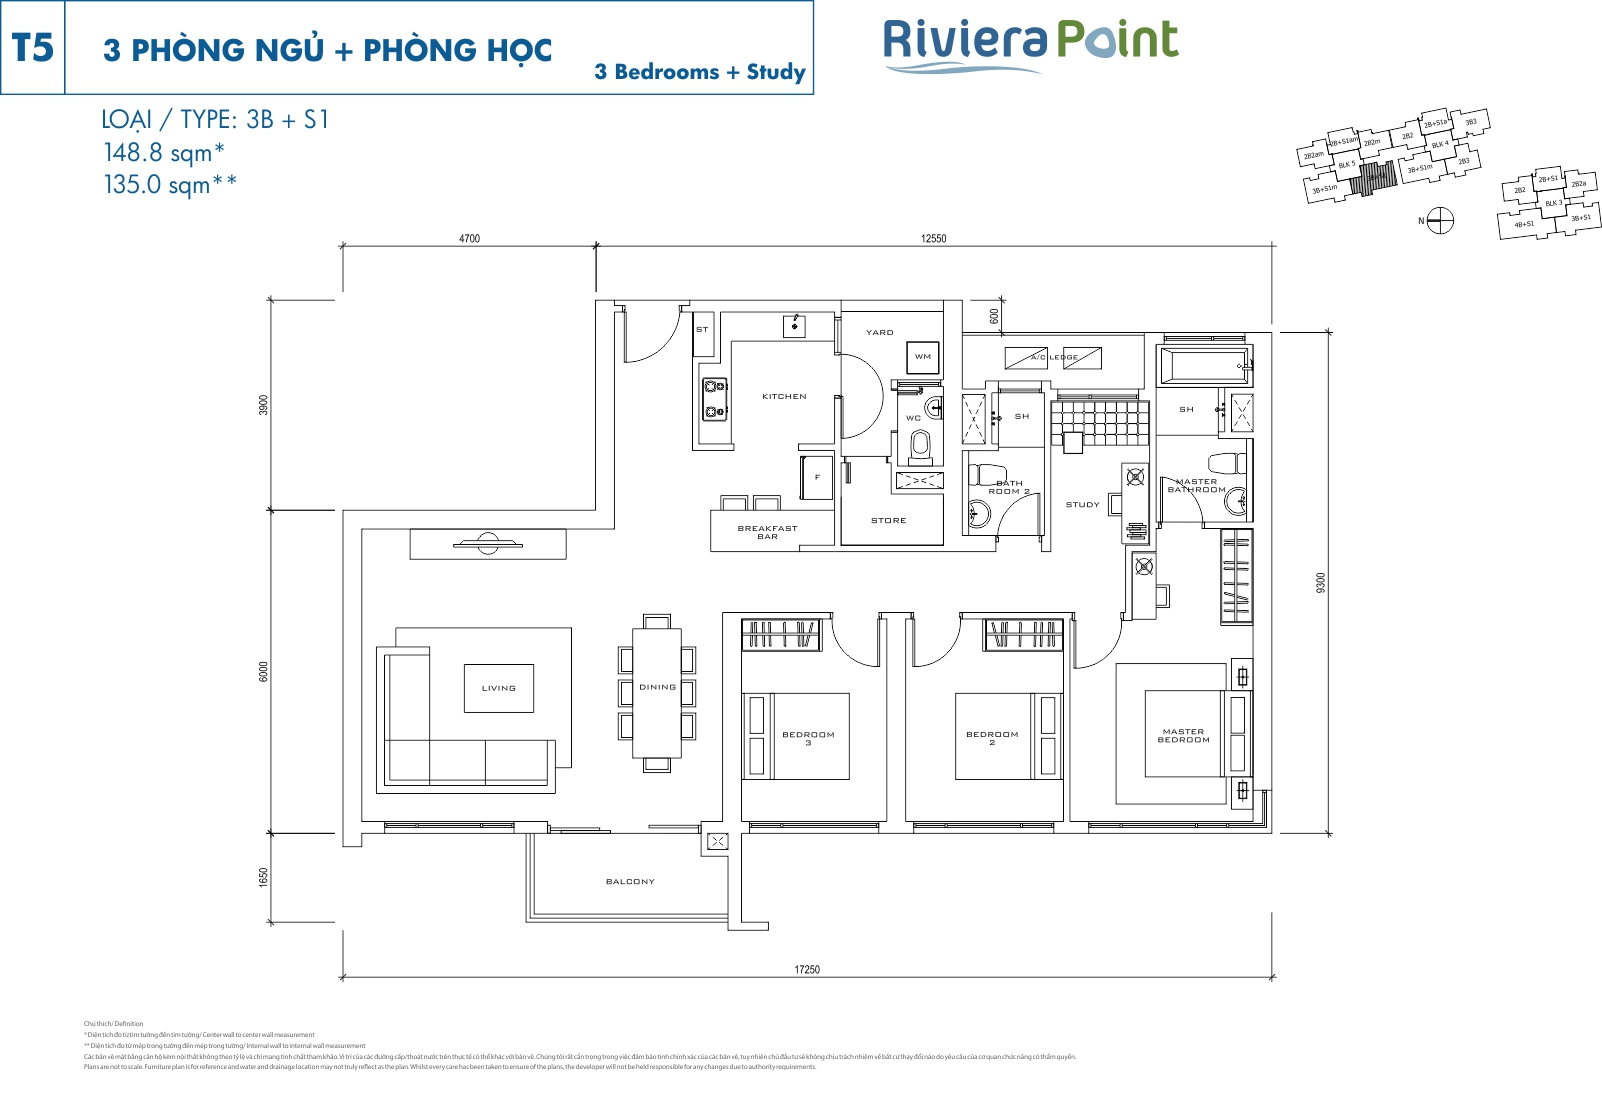 Mặt bằng căn hộ Riviera Point quận 7 layout căn 3 phòng ngủ lớn loại 148.8m2 (3PN) - T5 - 3B+S1